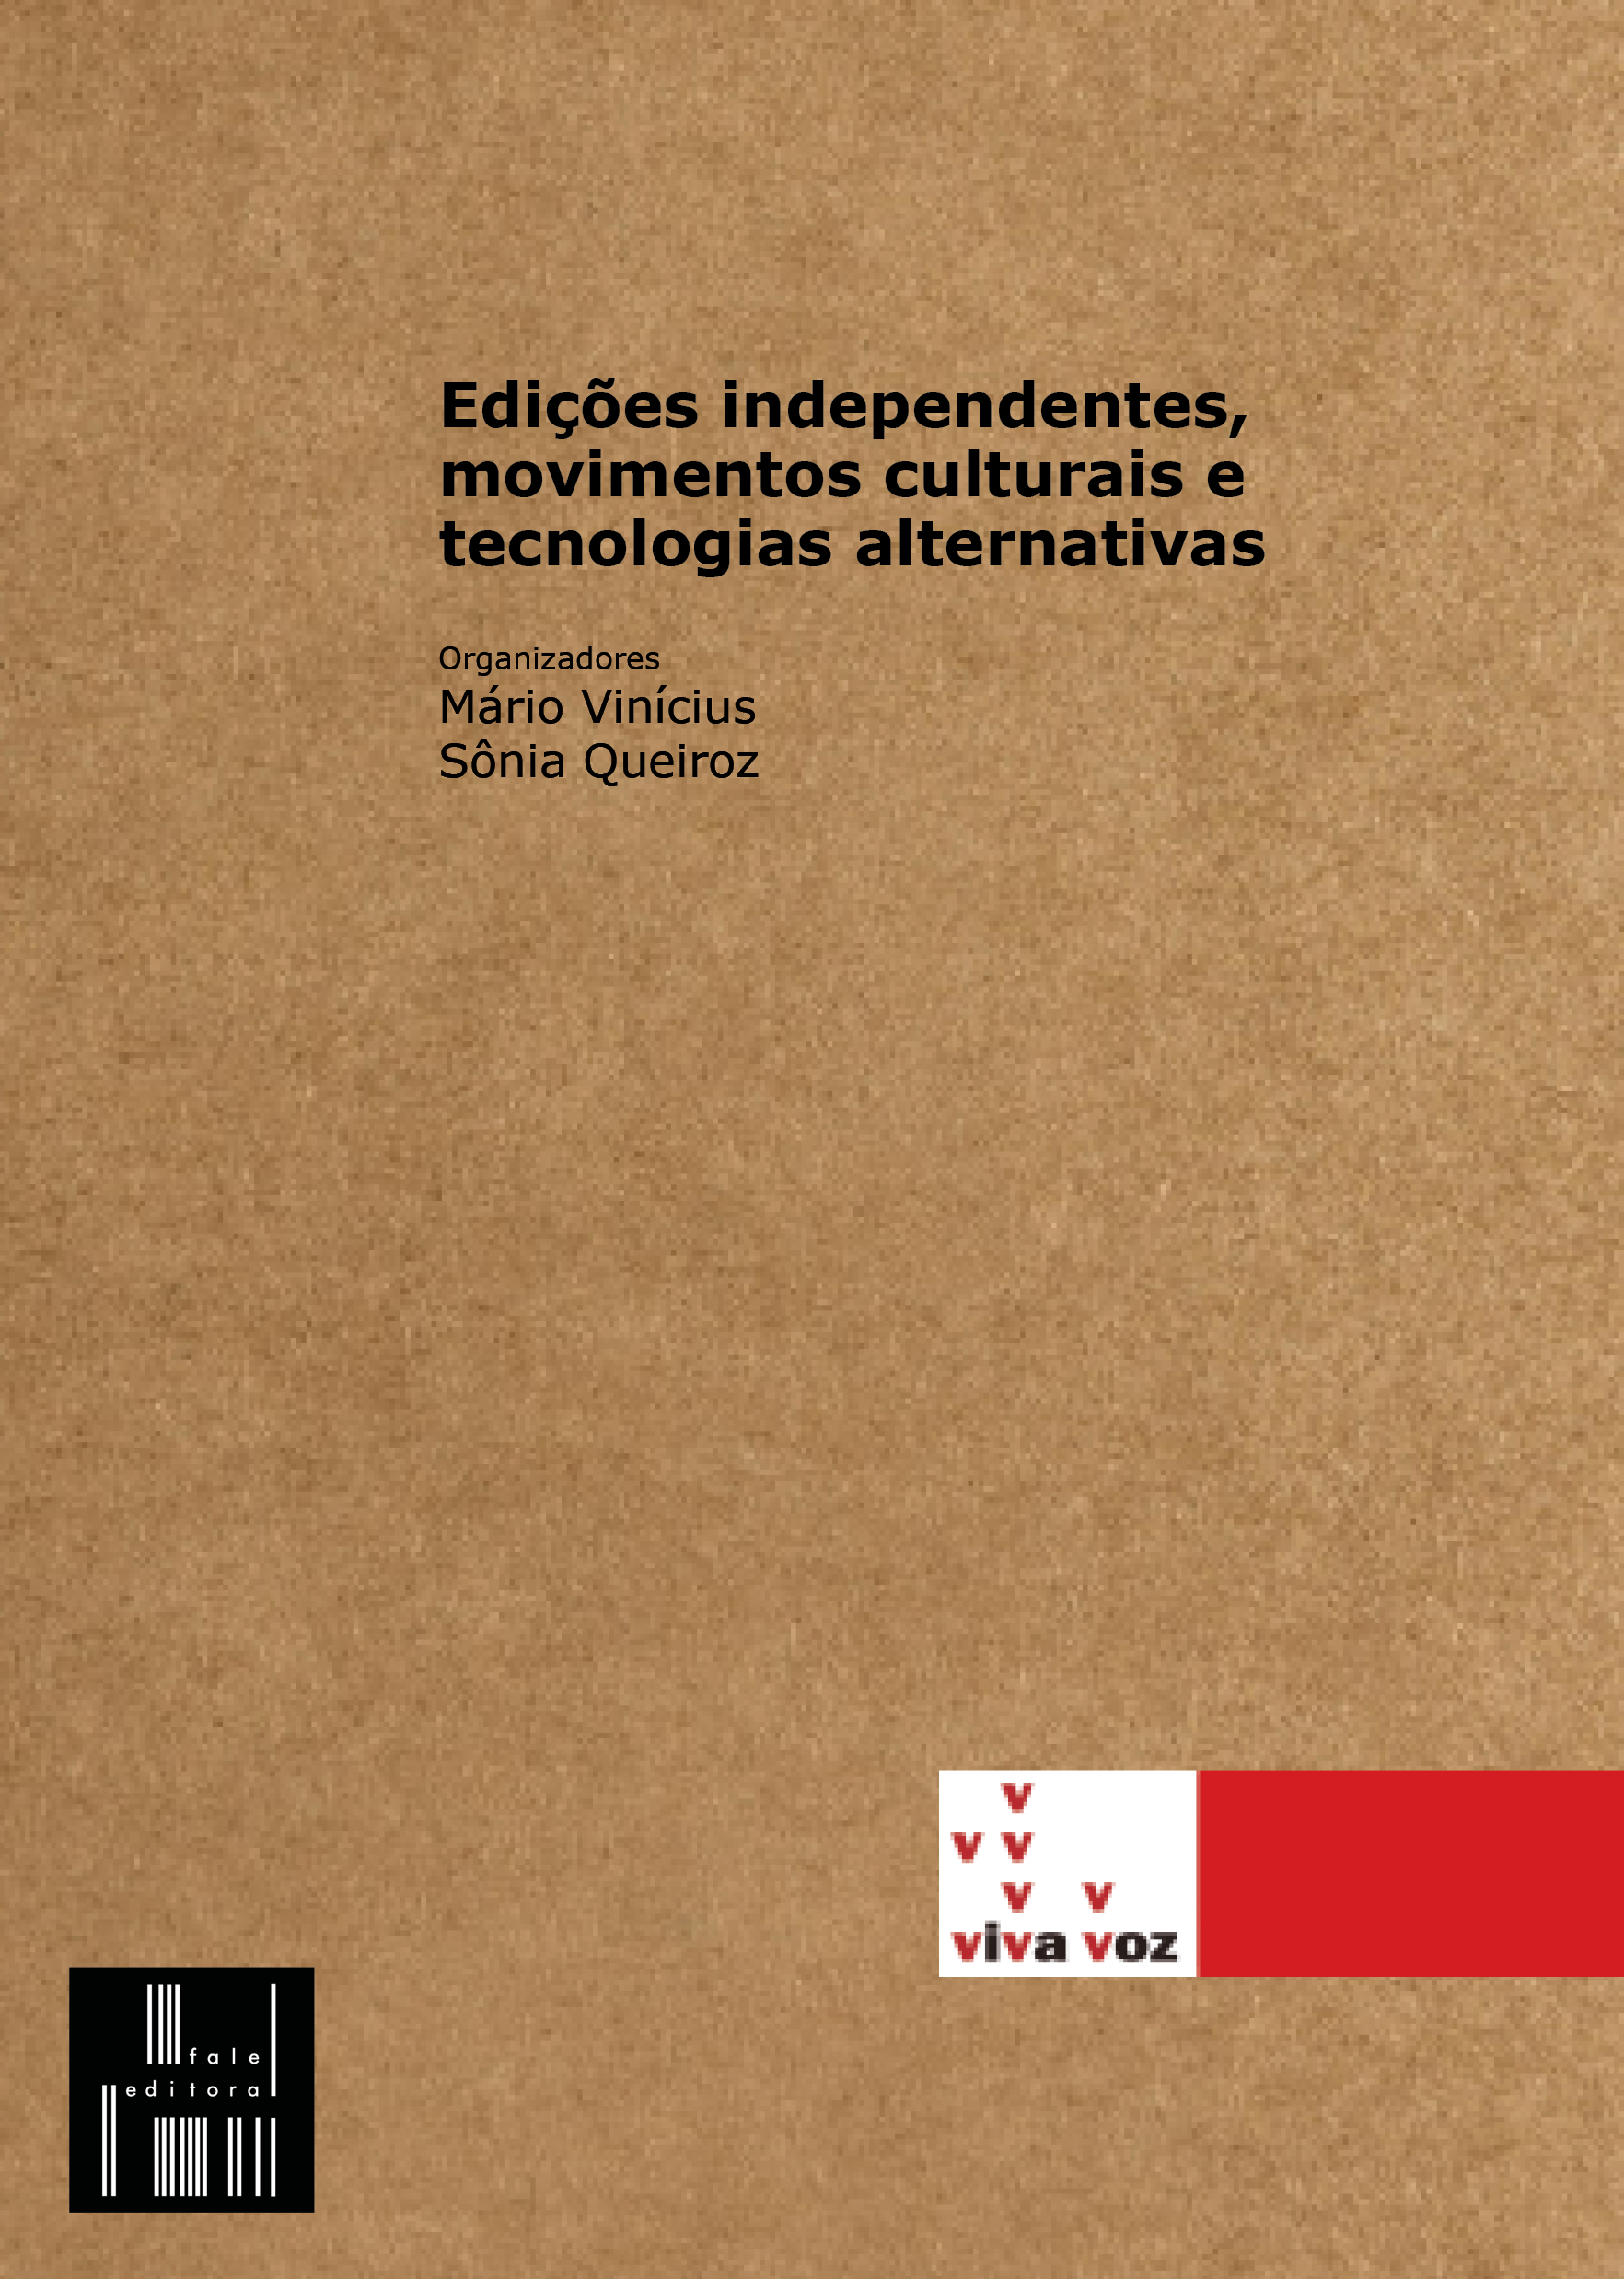 'Edições independentes [...]', organizado por Mário Vinícius e Sônia Queiroz